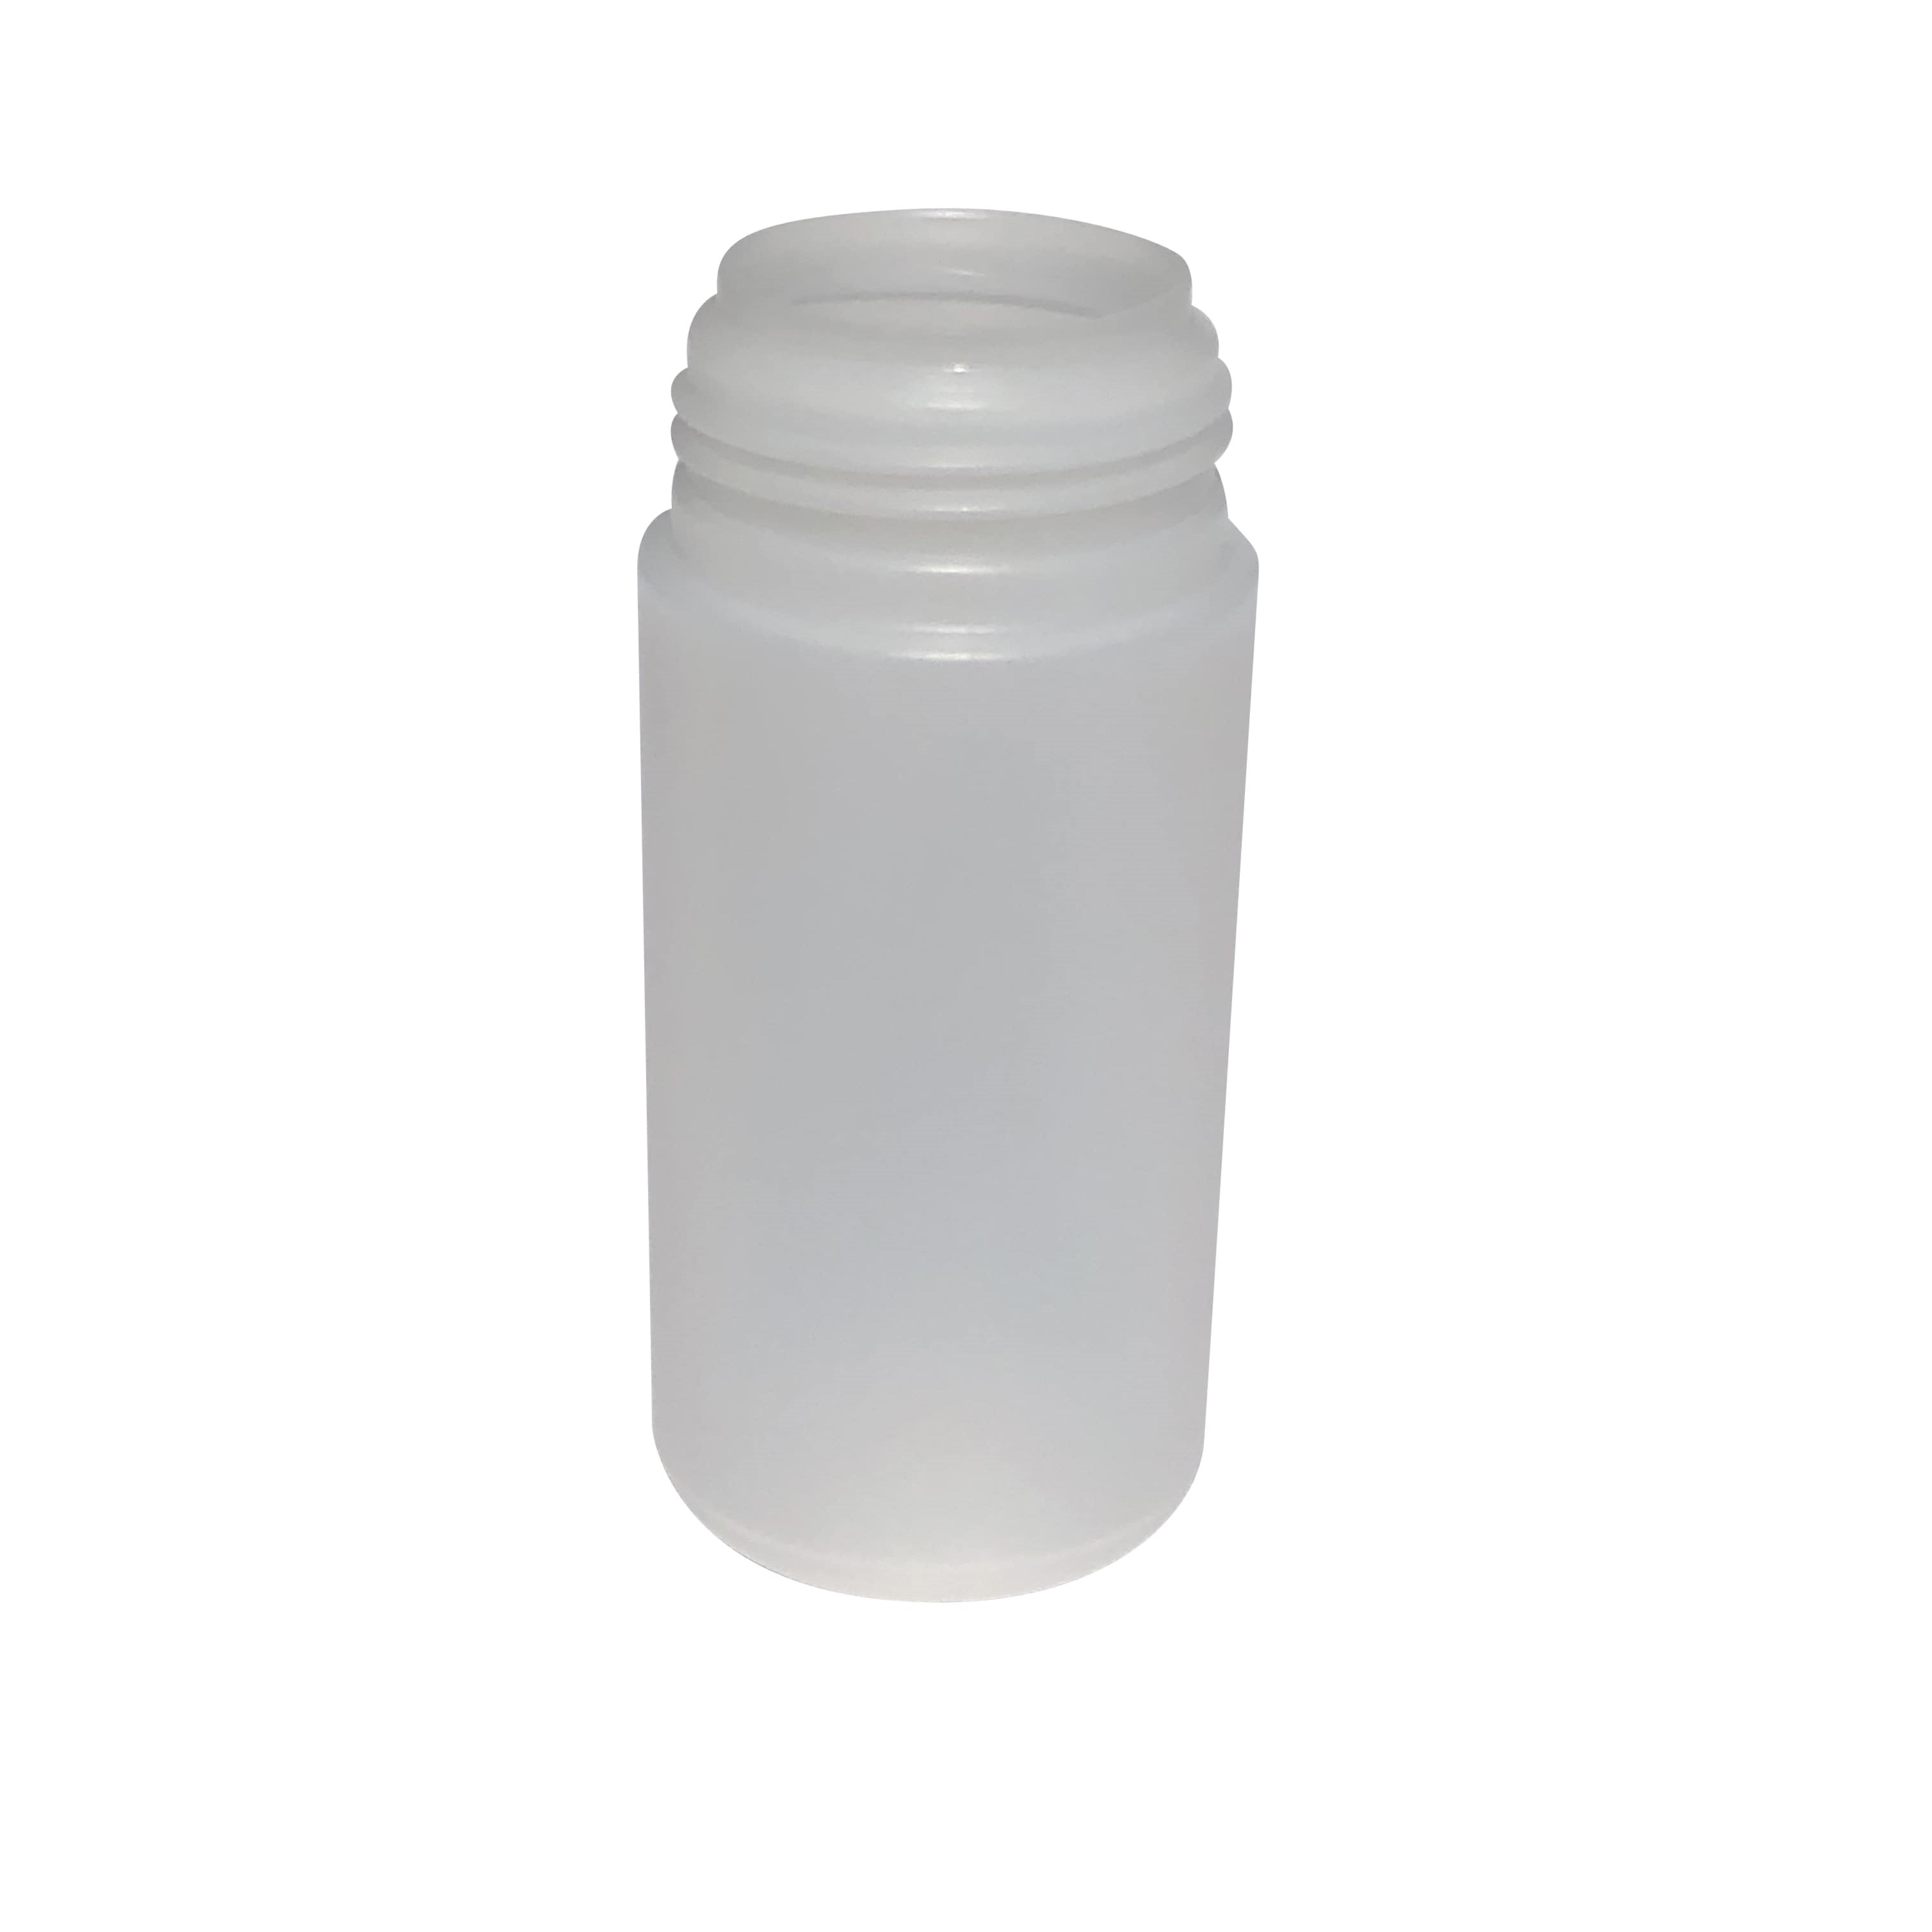 100 ml-es 'Foamer' adagoló, PP-műanyag, fehér, a következő szájnyíláshoz: csavaros kupak